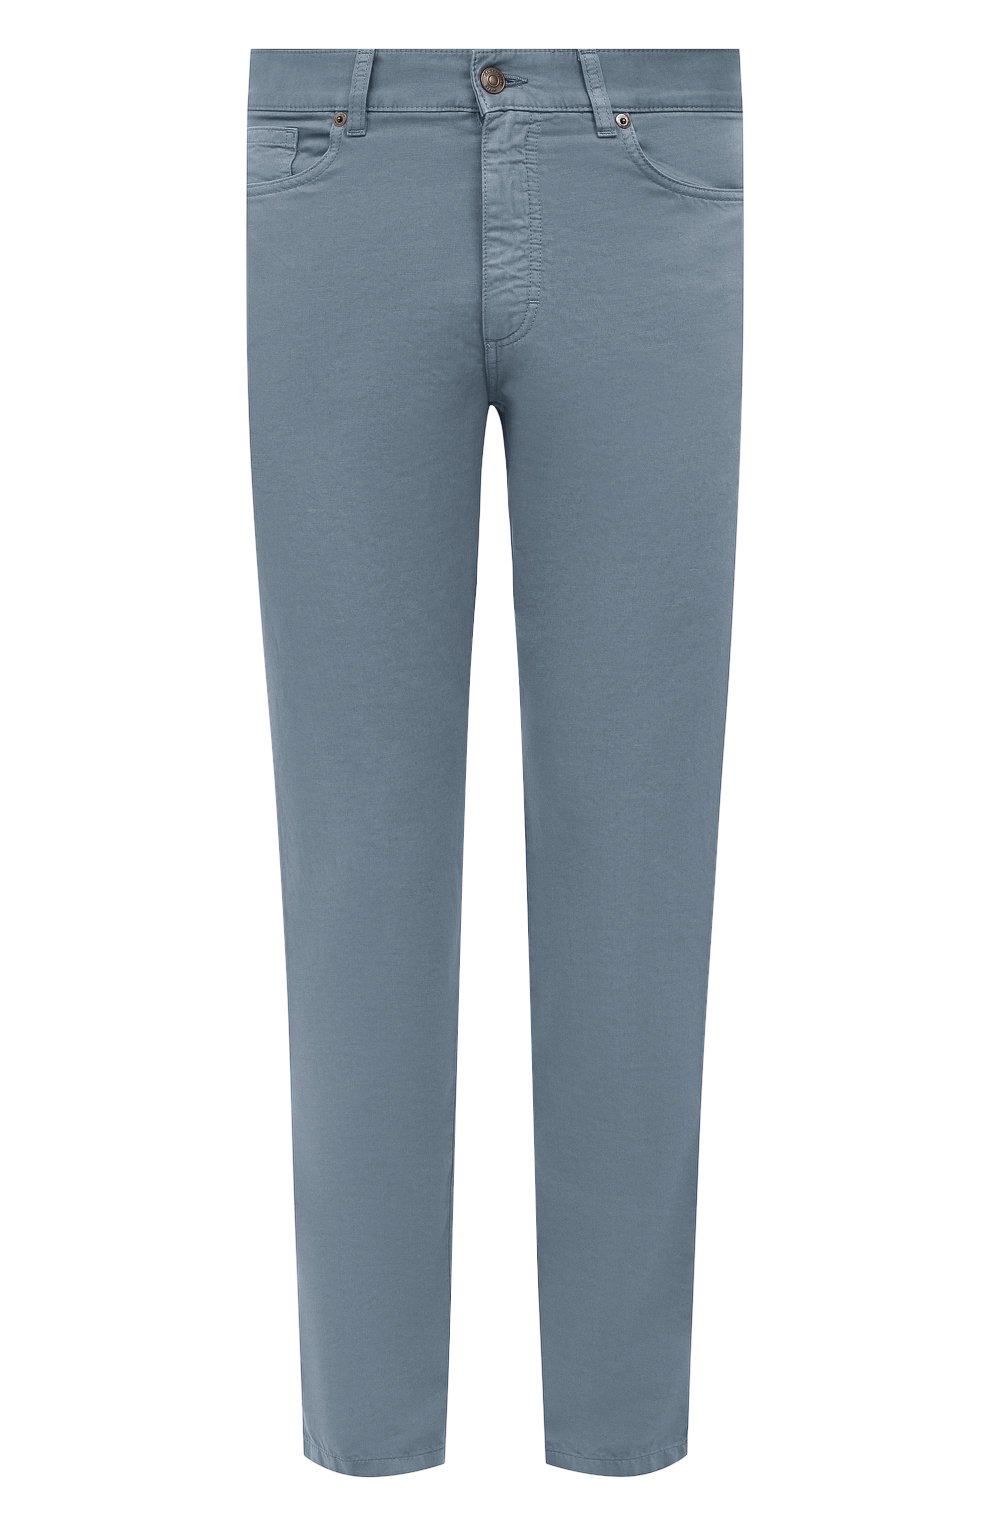 Мужские брюки из хлопка и льна ERMENEGILDO ZEGNA голубого цвета, арт. UZI37/GAN | Фото 1 (Длина (брюки, джинсы): Стандартные; Случай: Повседневный; Материал внешний: Хлопок; Стили: Кэжуэл)